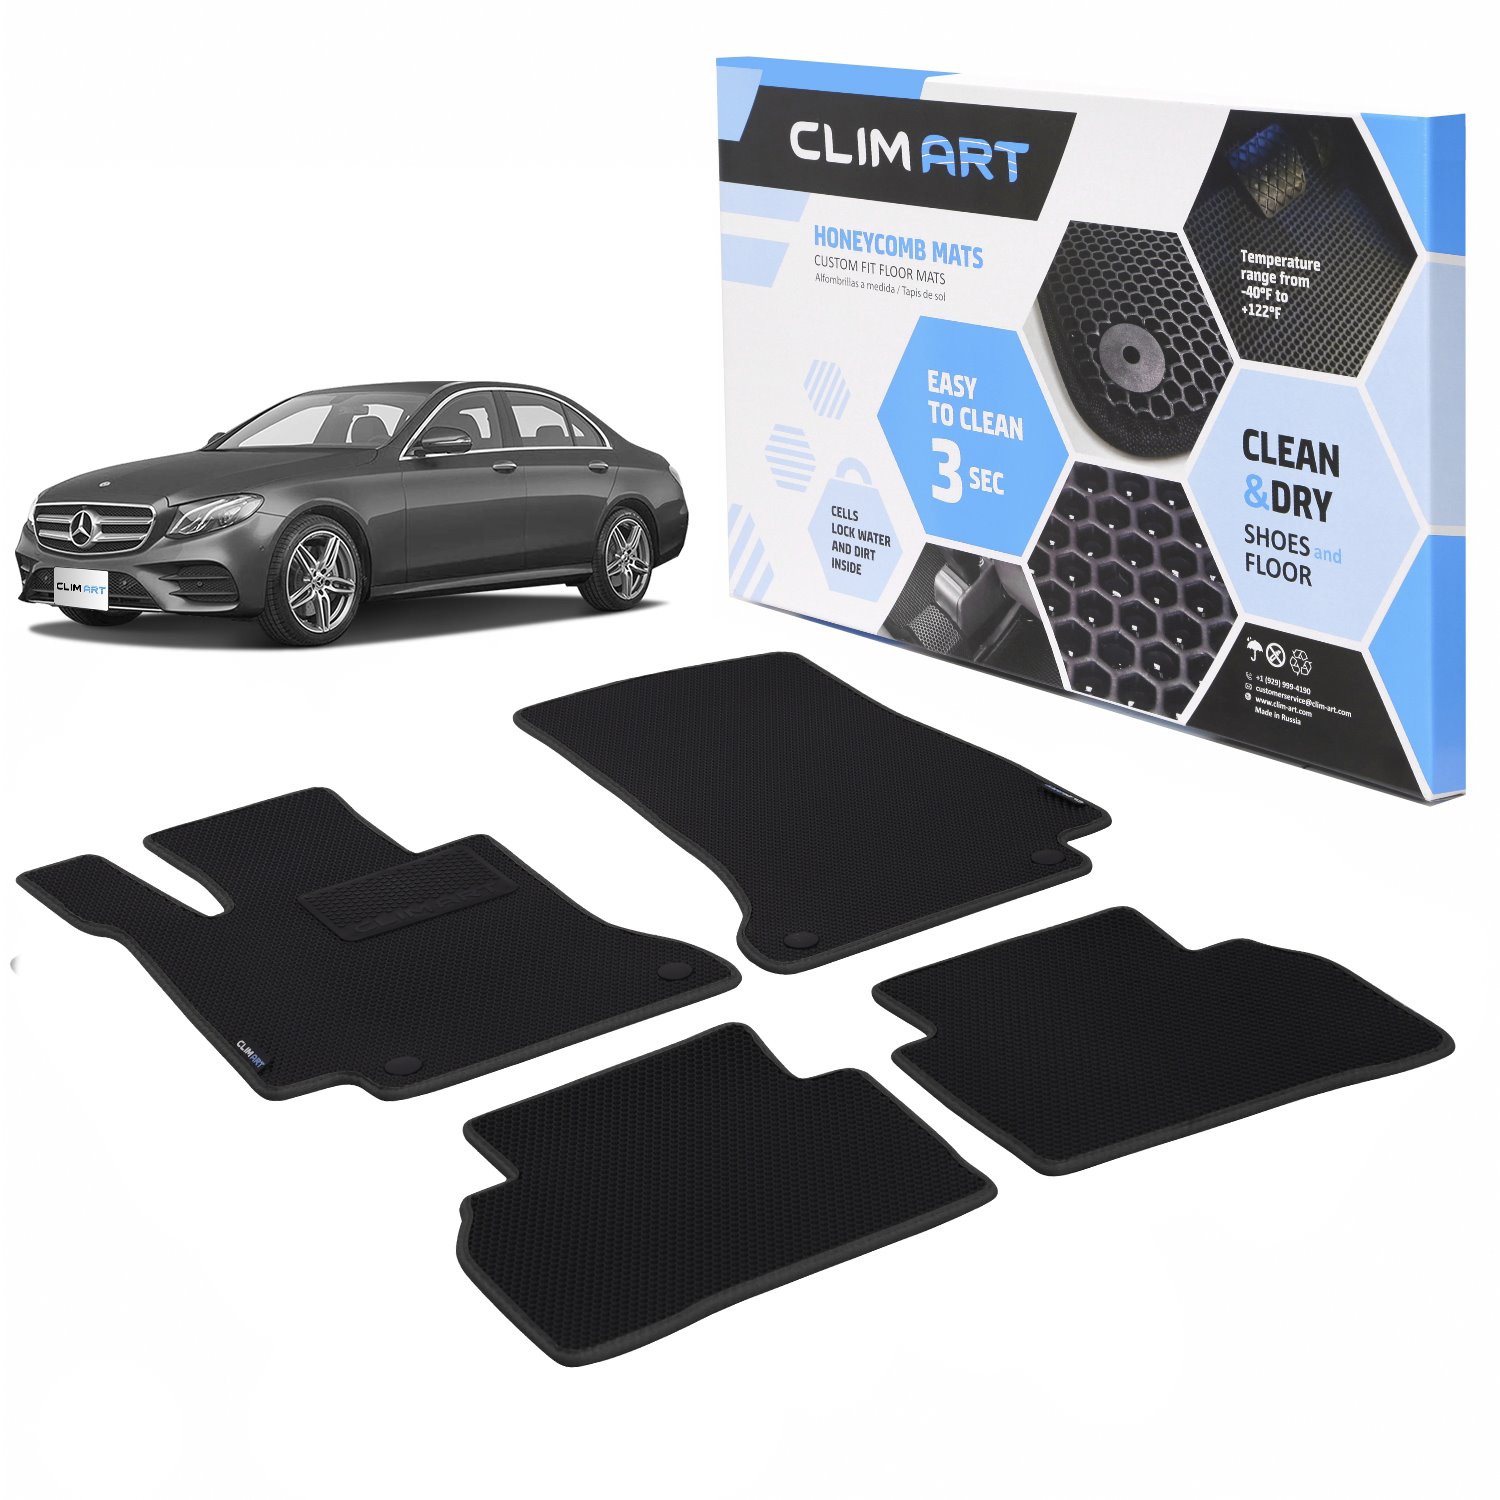 CLIM ART Honeycomb Custom Fit Floor Mats Fits Select Mercedes E-Class Sedan